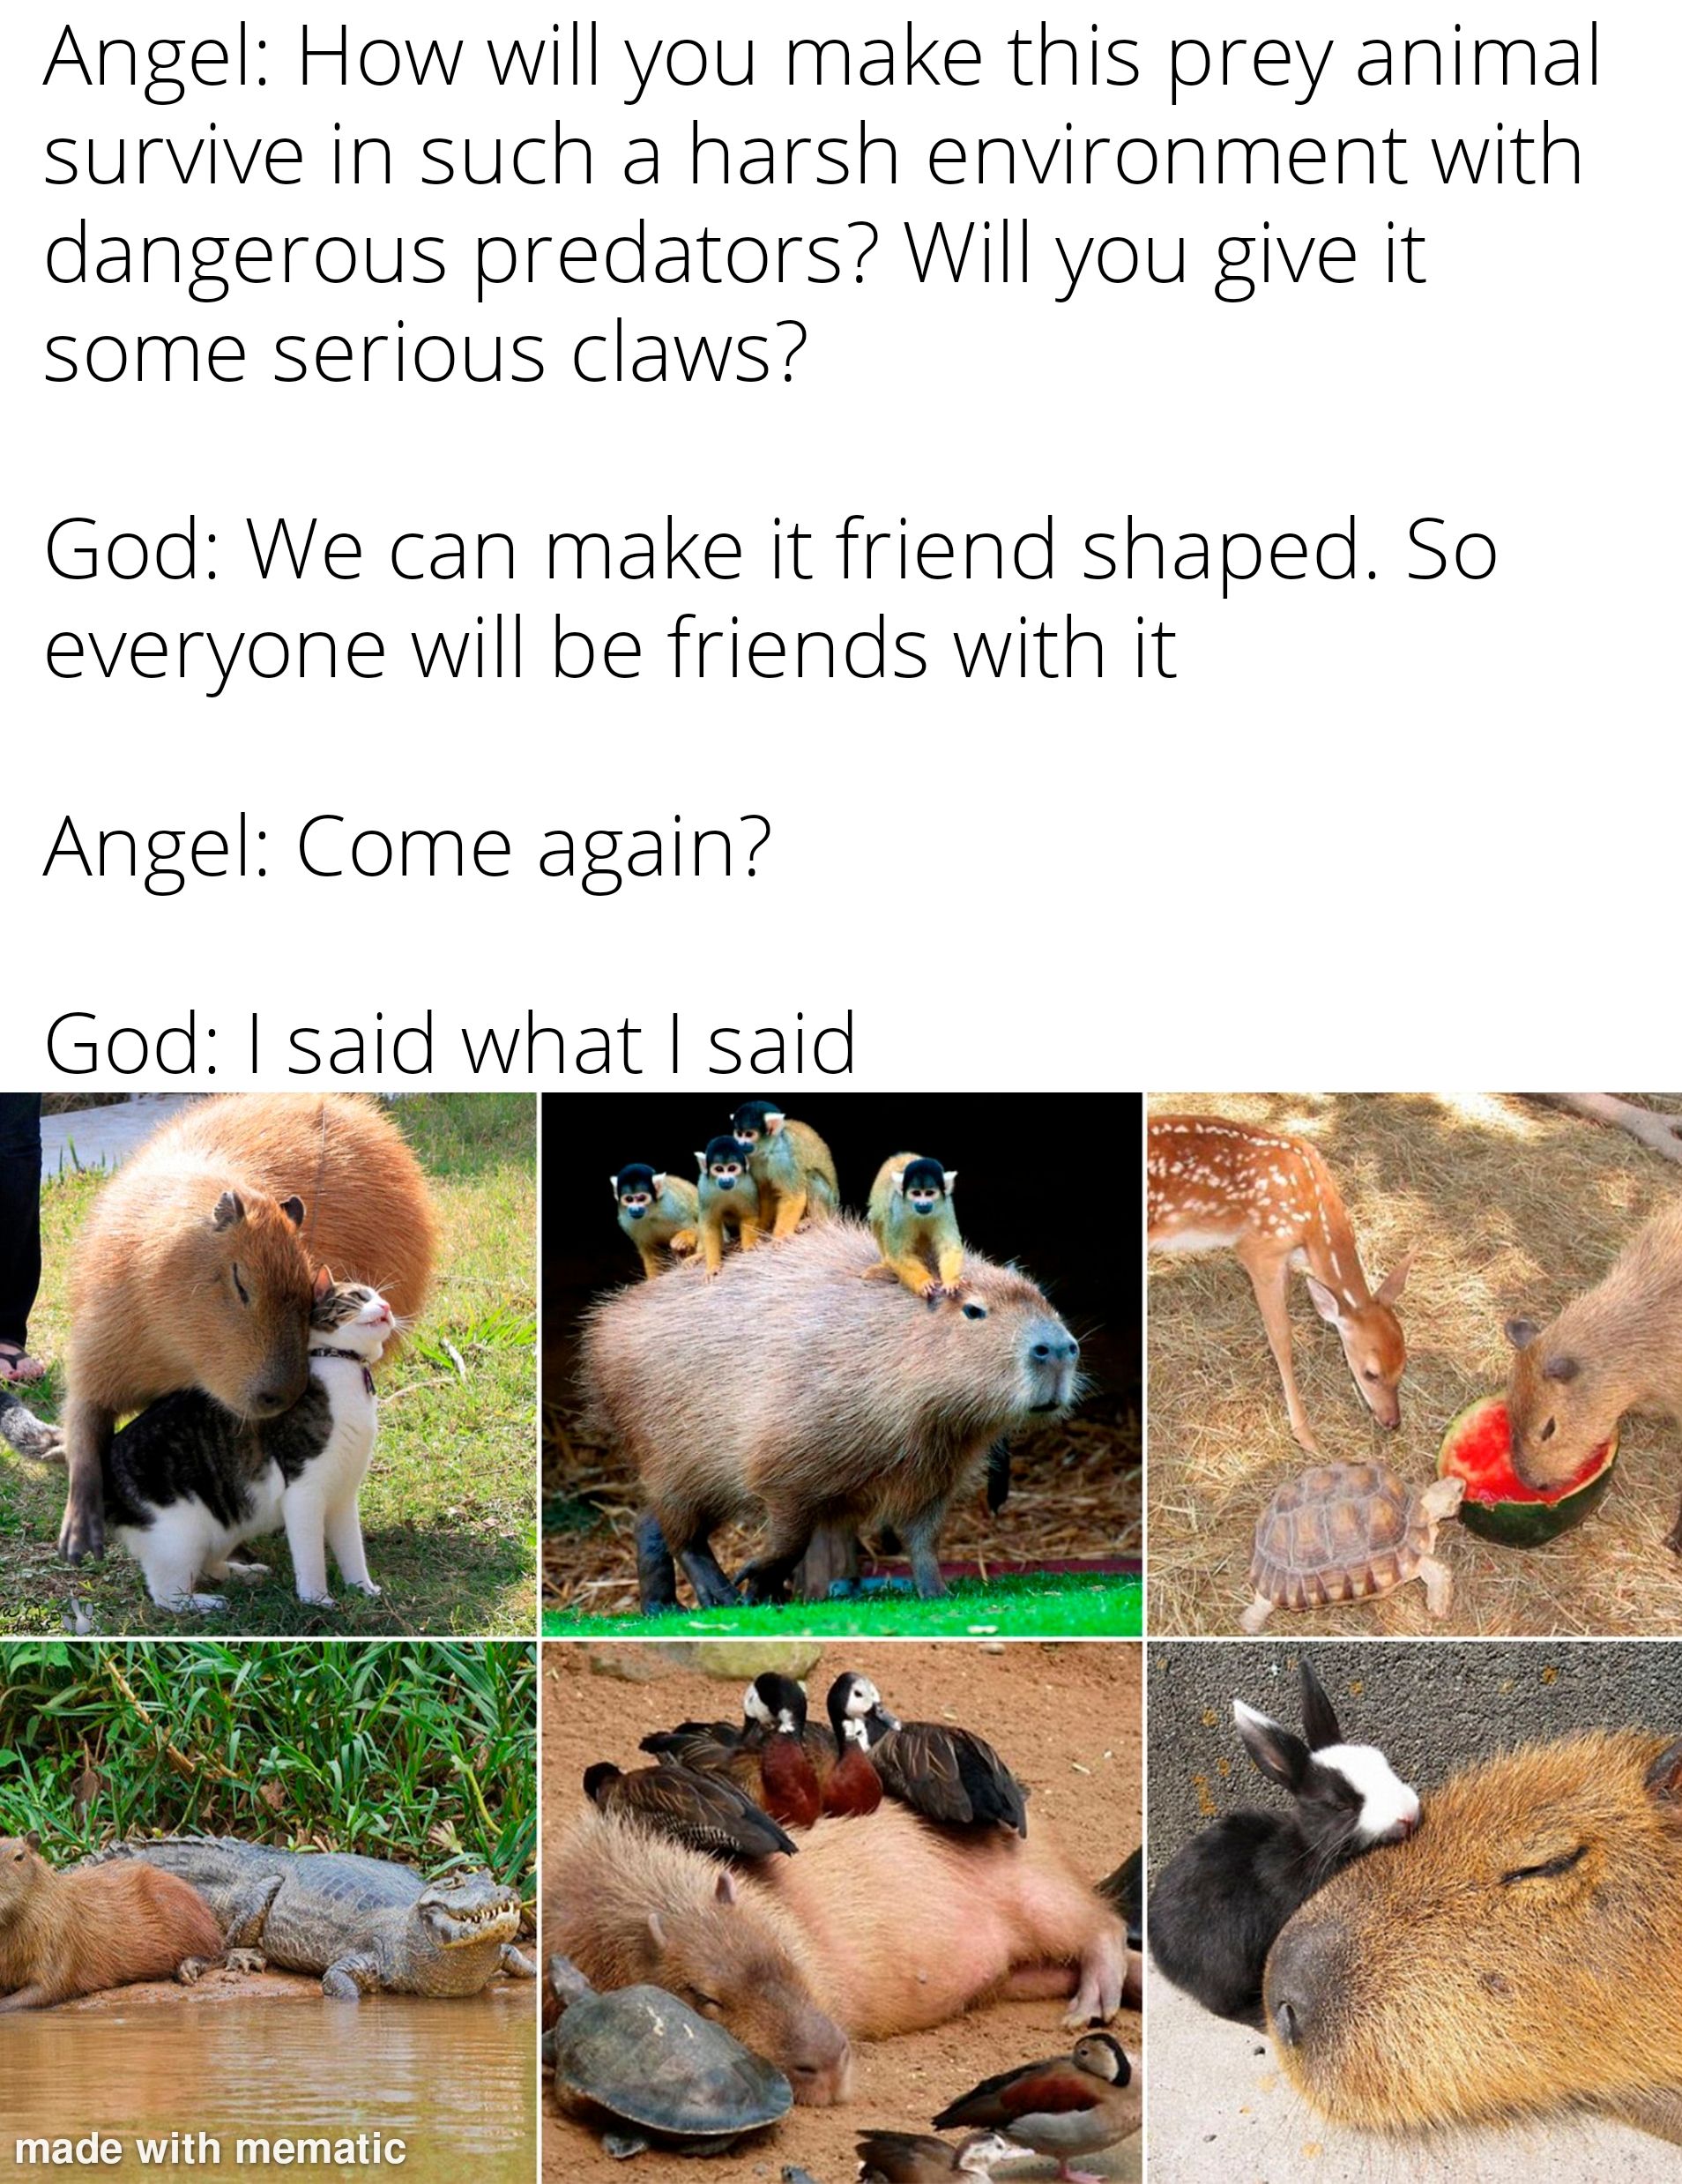 Capybaras have maxed their friendship skill